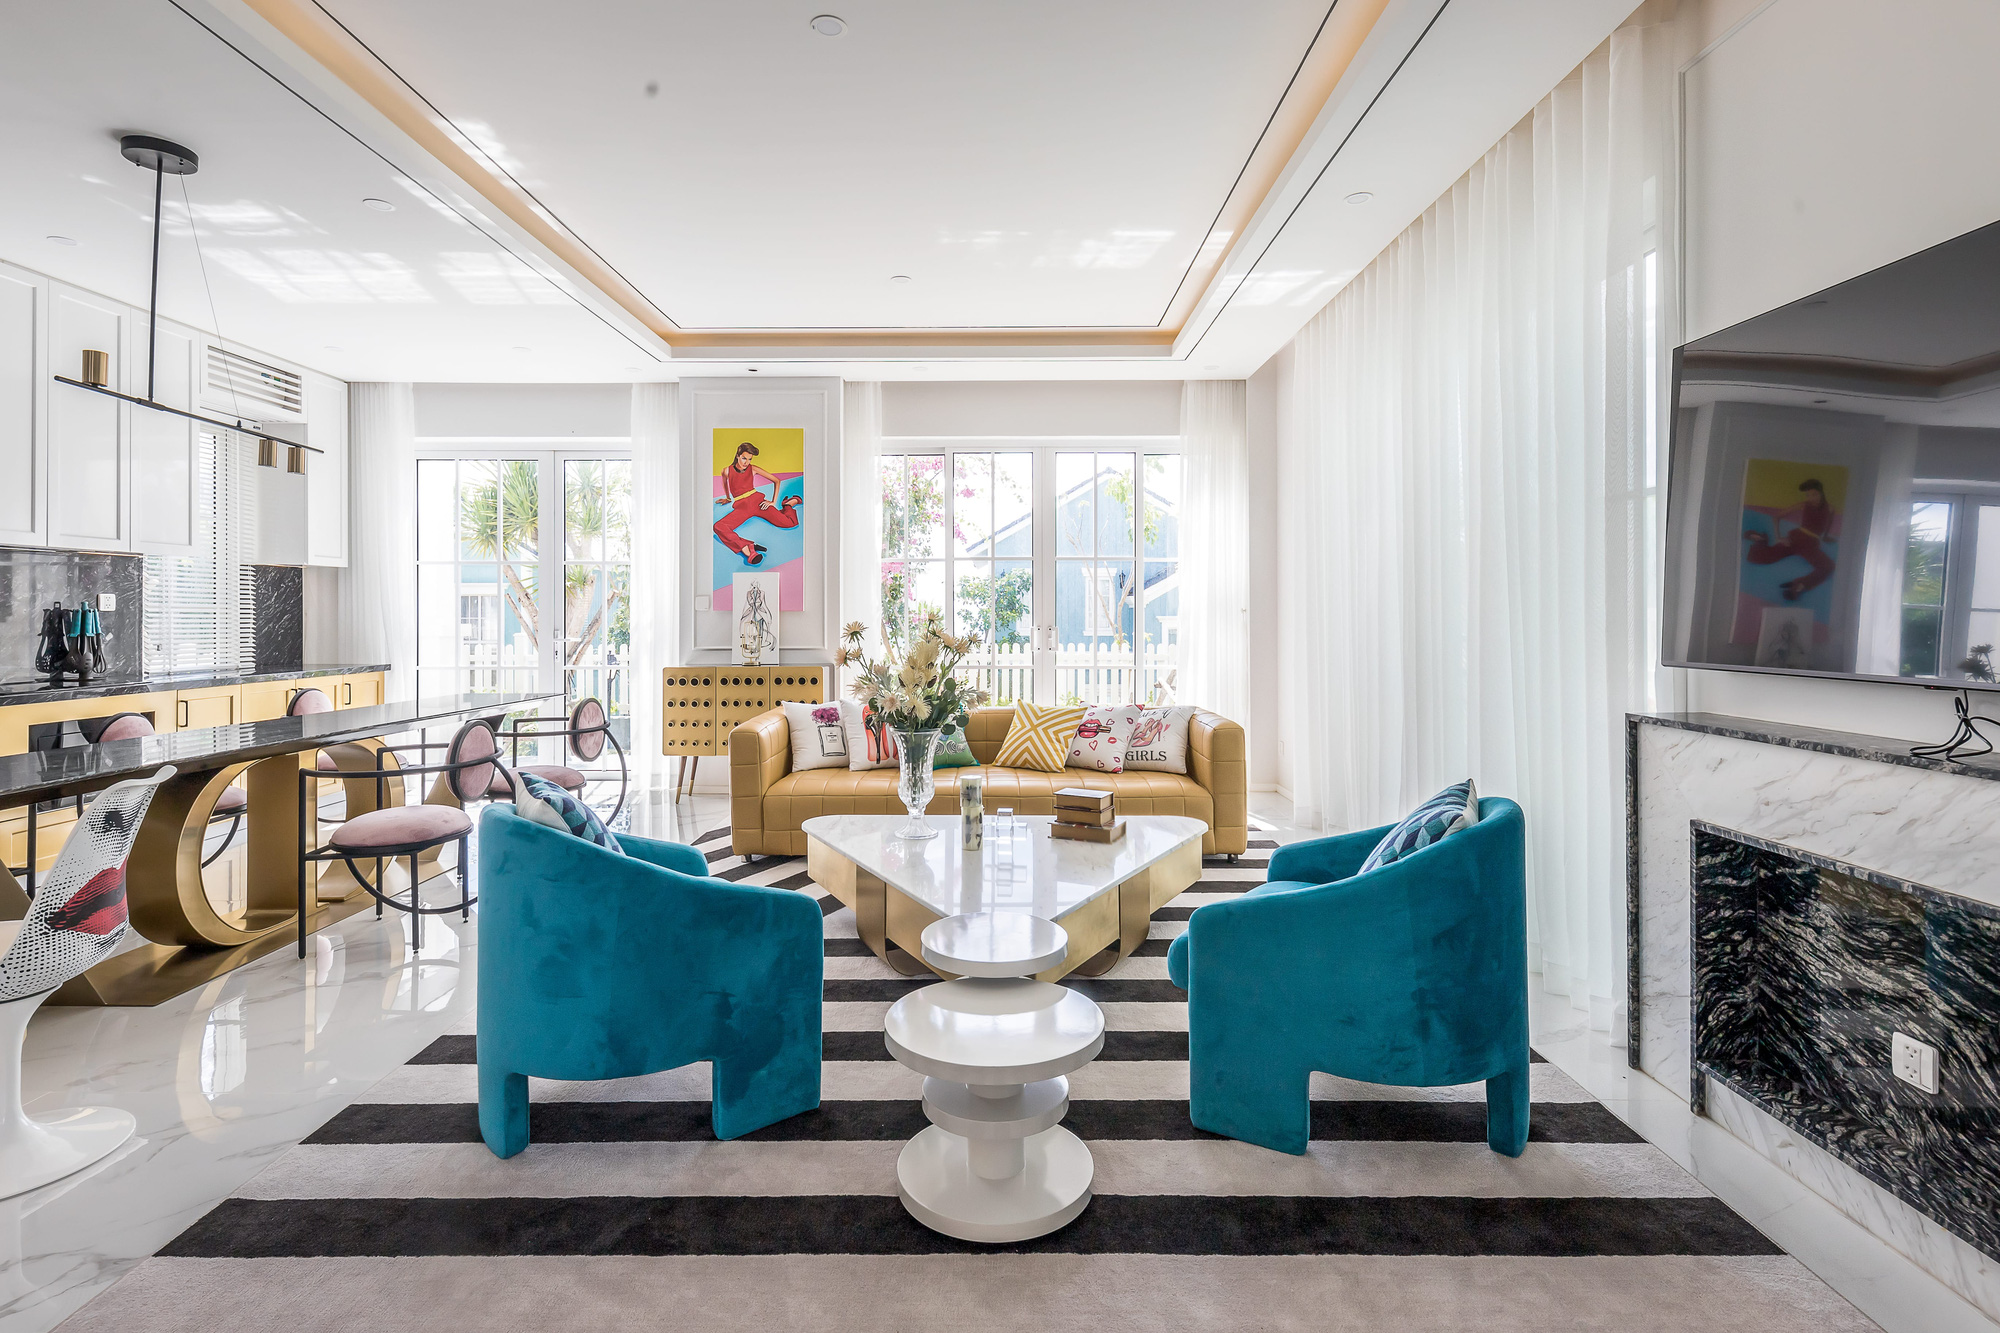 Căn villa 280m² trang bị nội thất giá 3 tỷ đẹp như bản giao hưởng nghệ thuật đương đại bên bờ biển Phan Thiết - Ảnh 5.